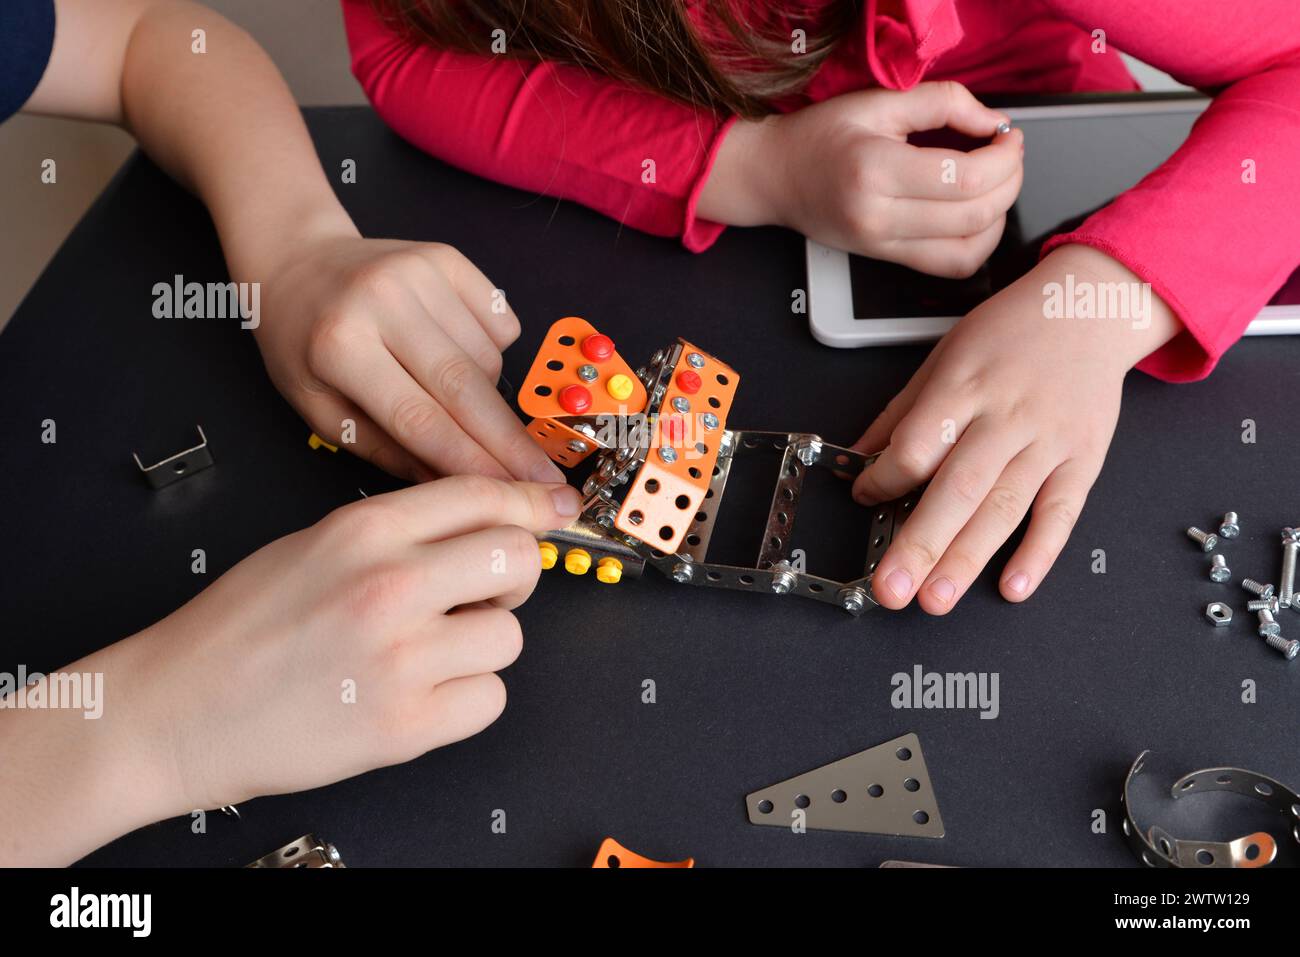 Les enfants assemblent le robot, mettant en valeur les compétences en ingénierie. Vue de dessus de la table. Concept d'éducation, de créativité et d'apprentissage pratique Banque D'Images